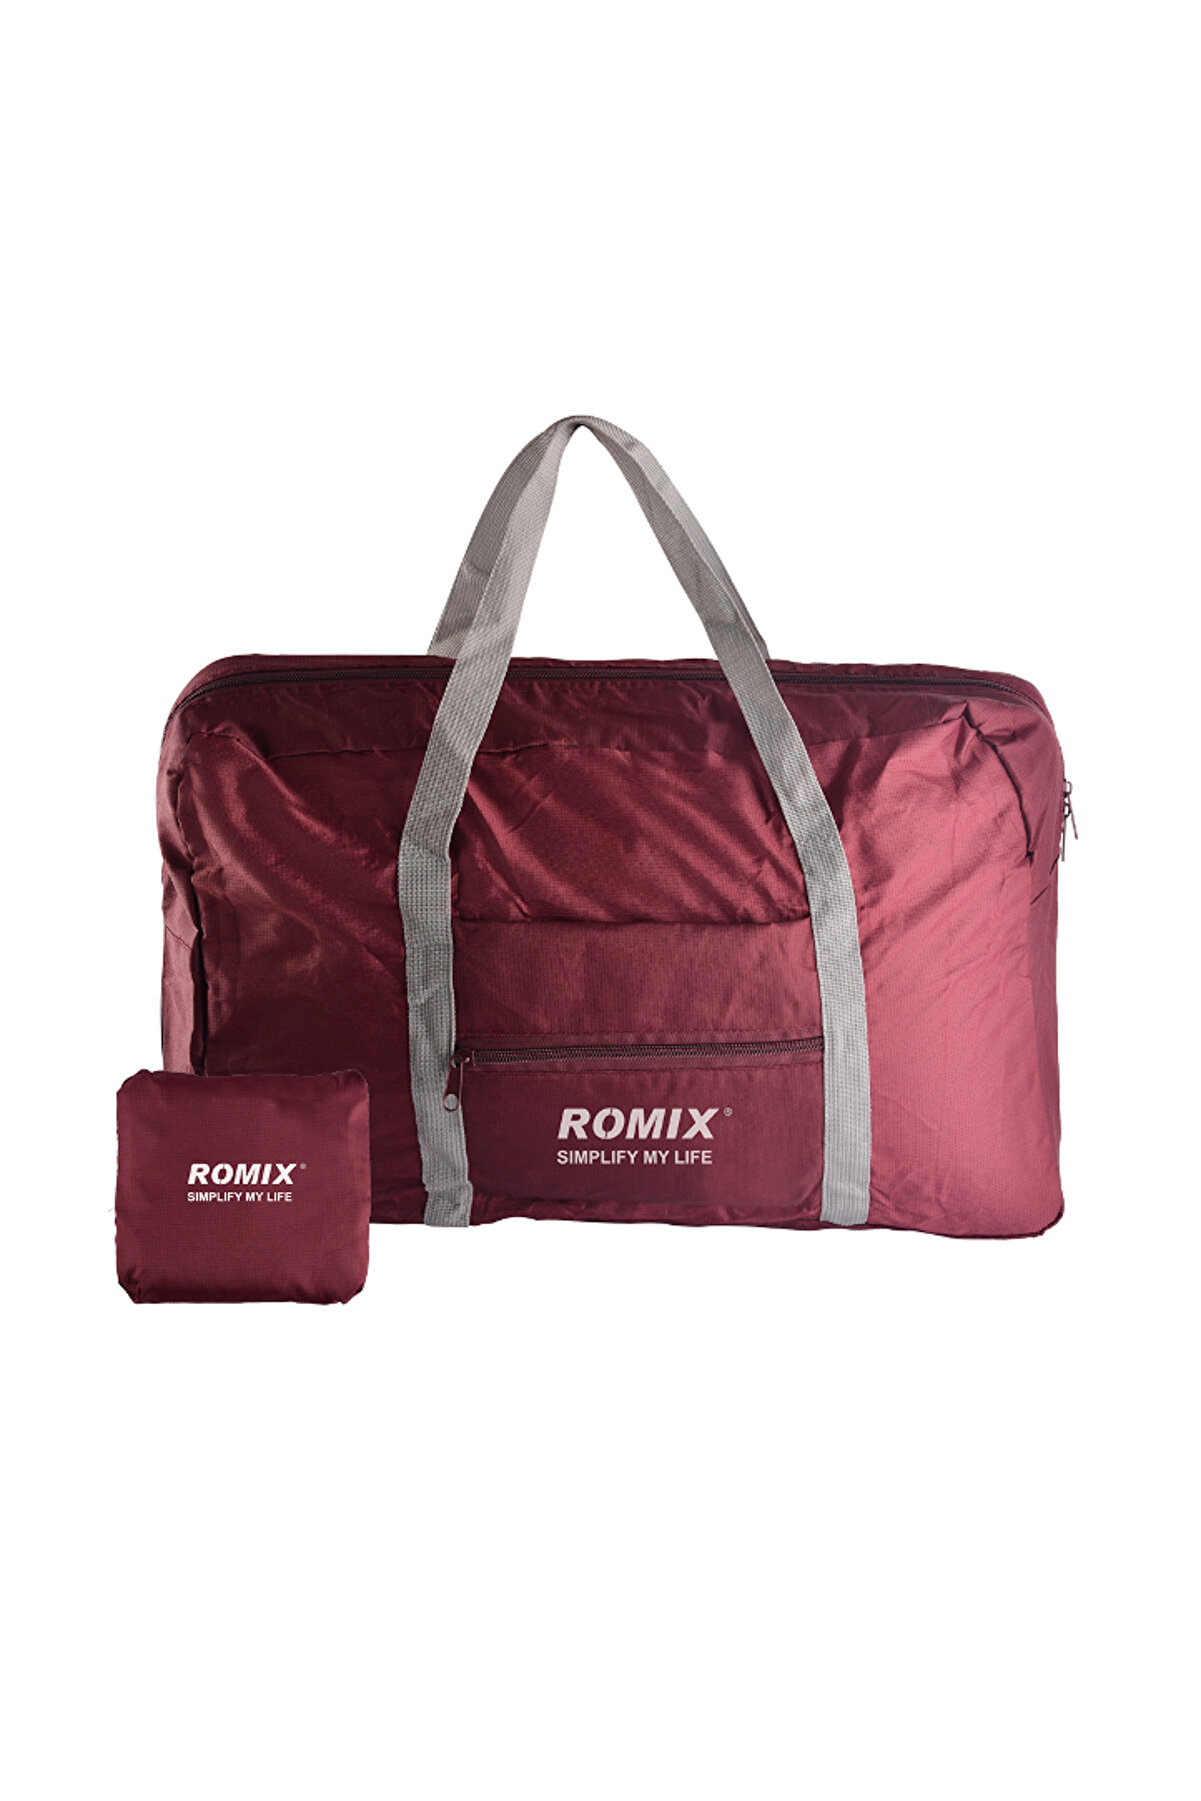 ROMİX Romix Taşınabilir ve Katlanabilir Seyahat Çantası